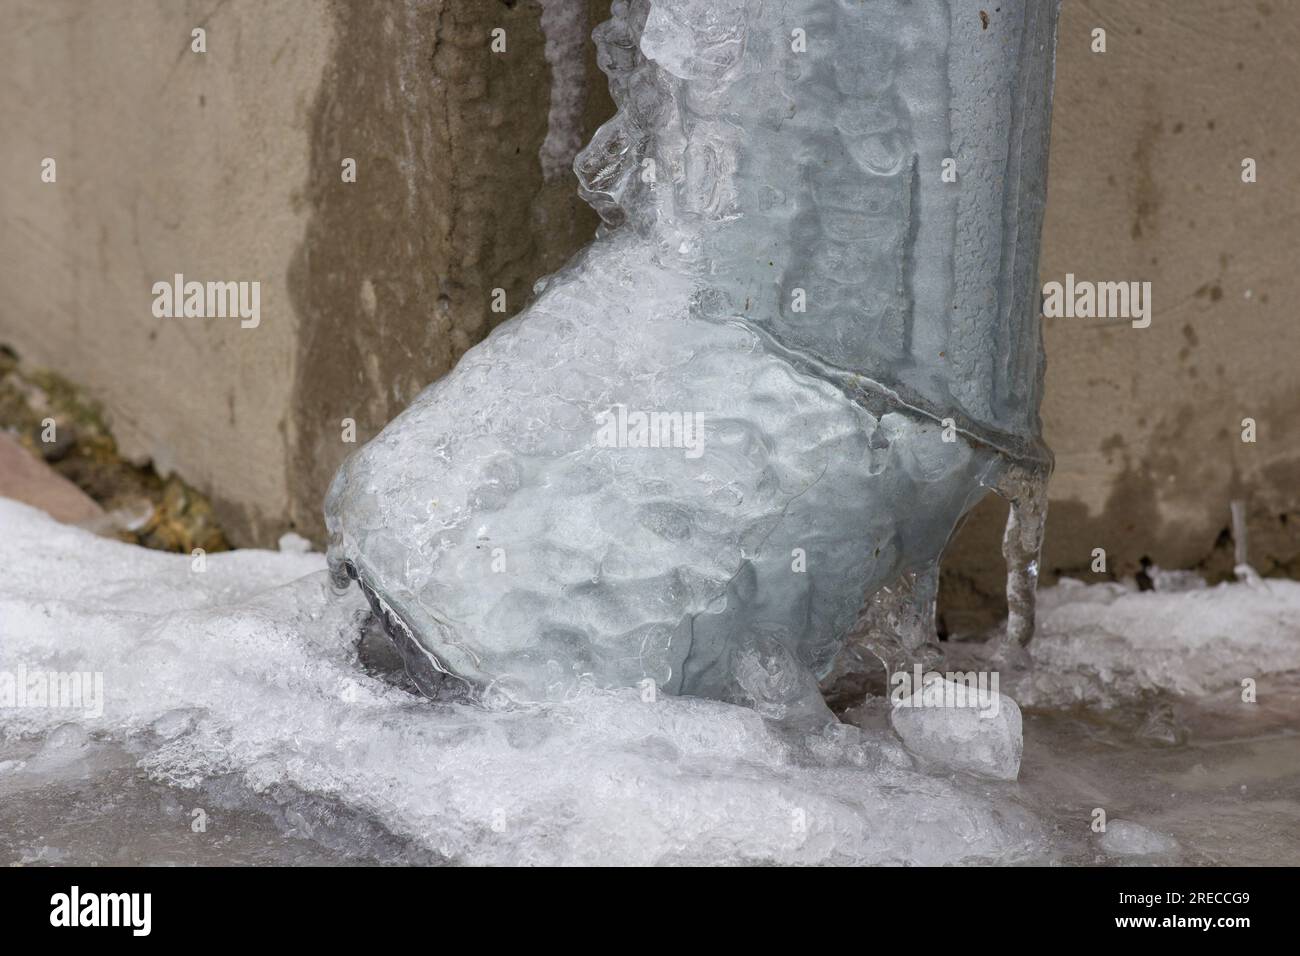 Tuyau de descente de gouttière de drainage de l'eau de pluie gelée Banque D'Images